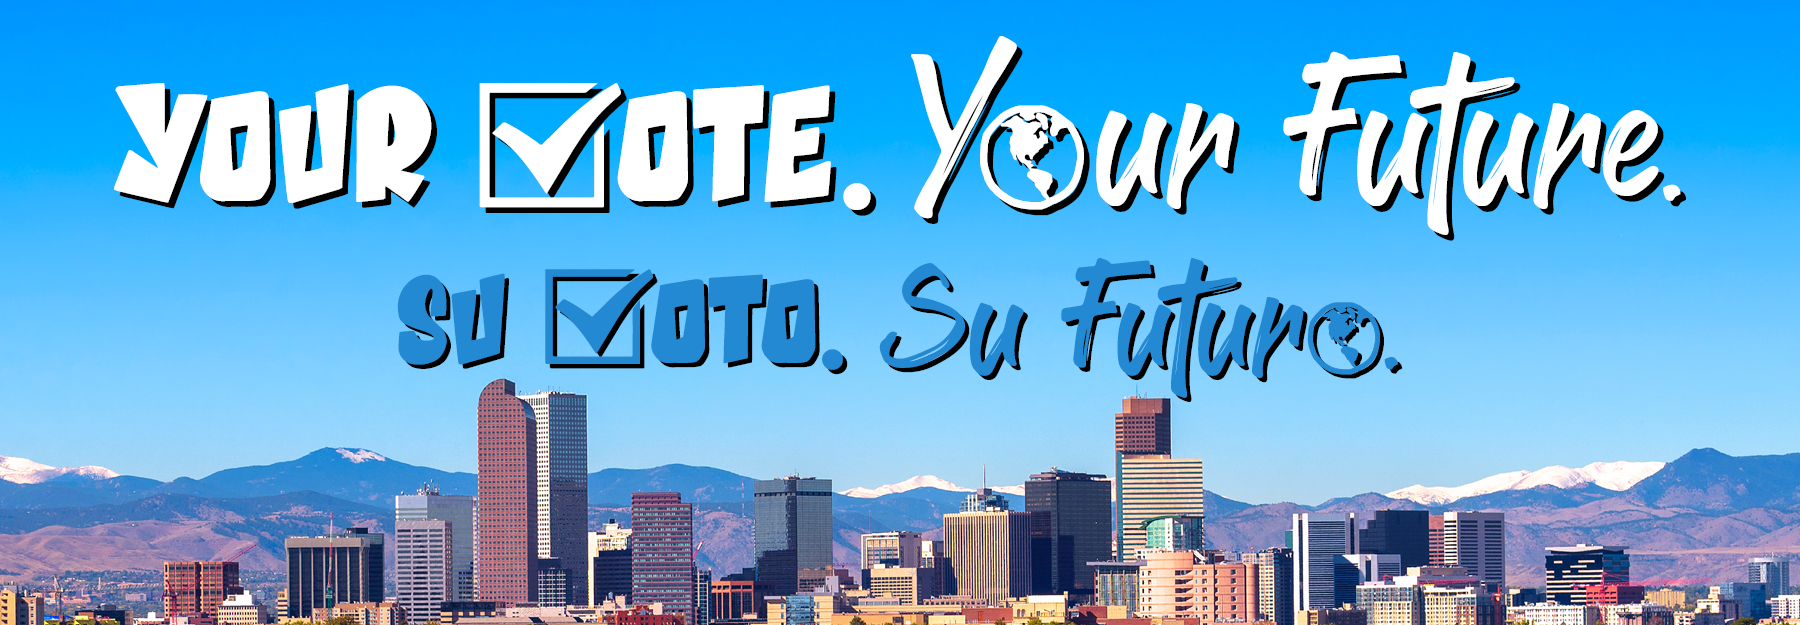 Denver skyline with the words 'Your vote. Your Future' and 'Su voto. Su futuro'